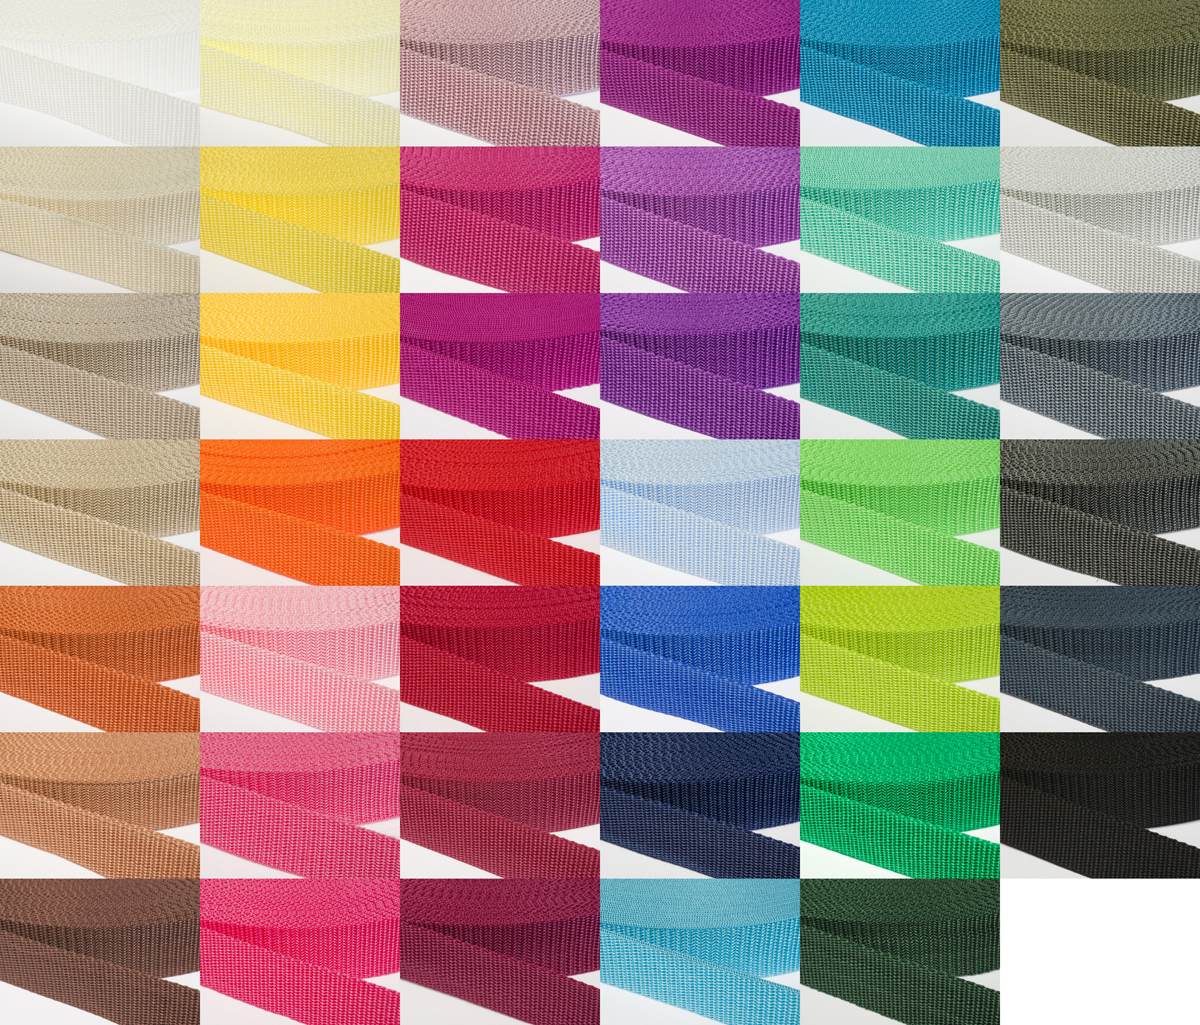 Gurtband 30mm breit aus Polypropylen in 41 Farben 24 - lila 6 Meter